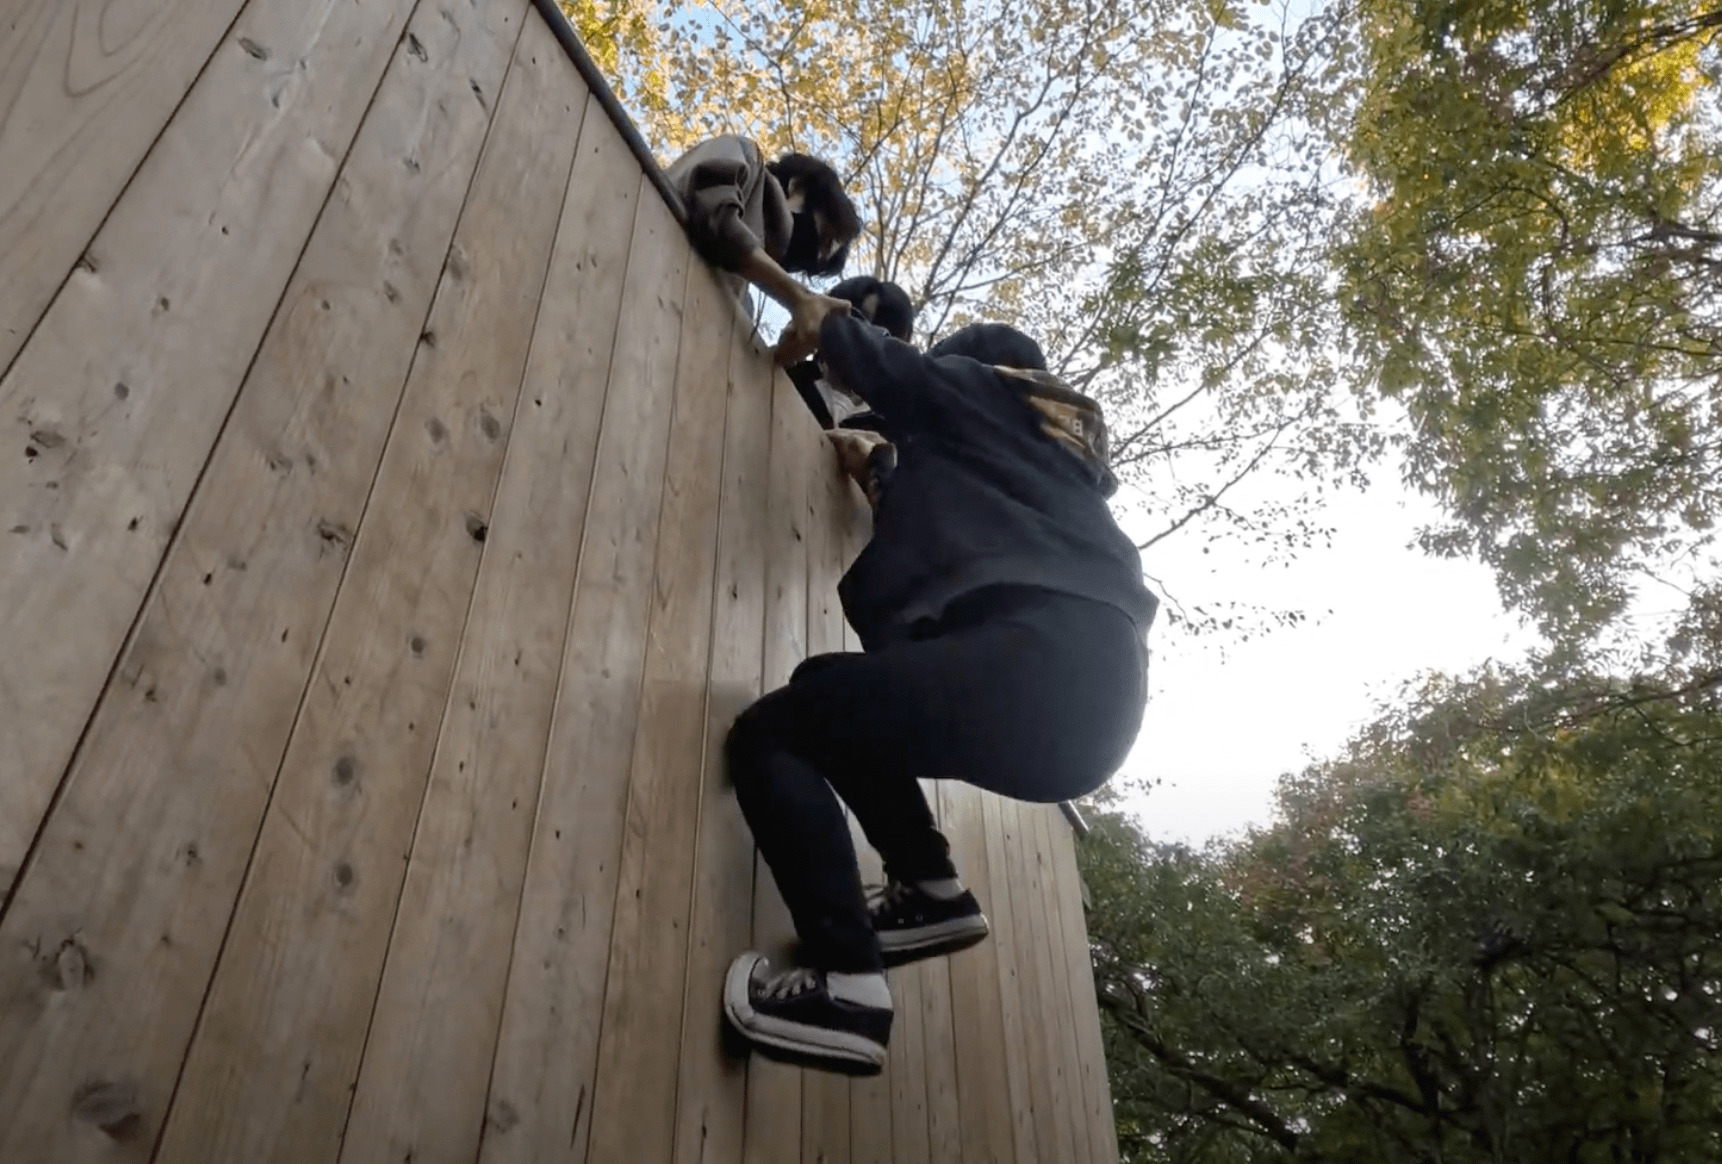 森の中に設置された大きな木製の壁をよじ登ろうとする生徒と、それを上から引き上げようとする生徒たち